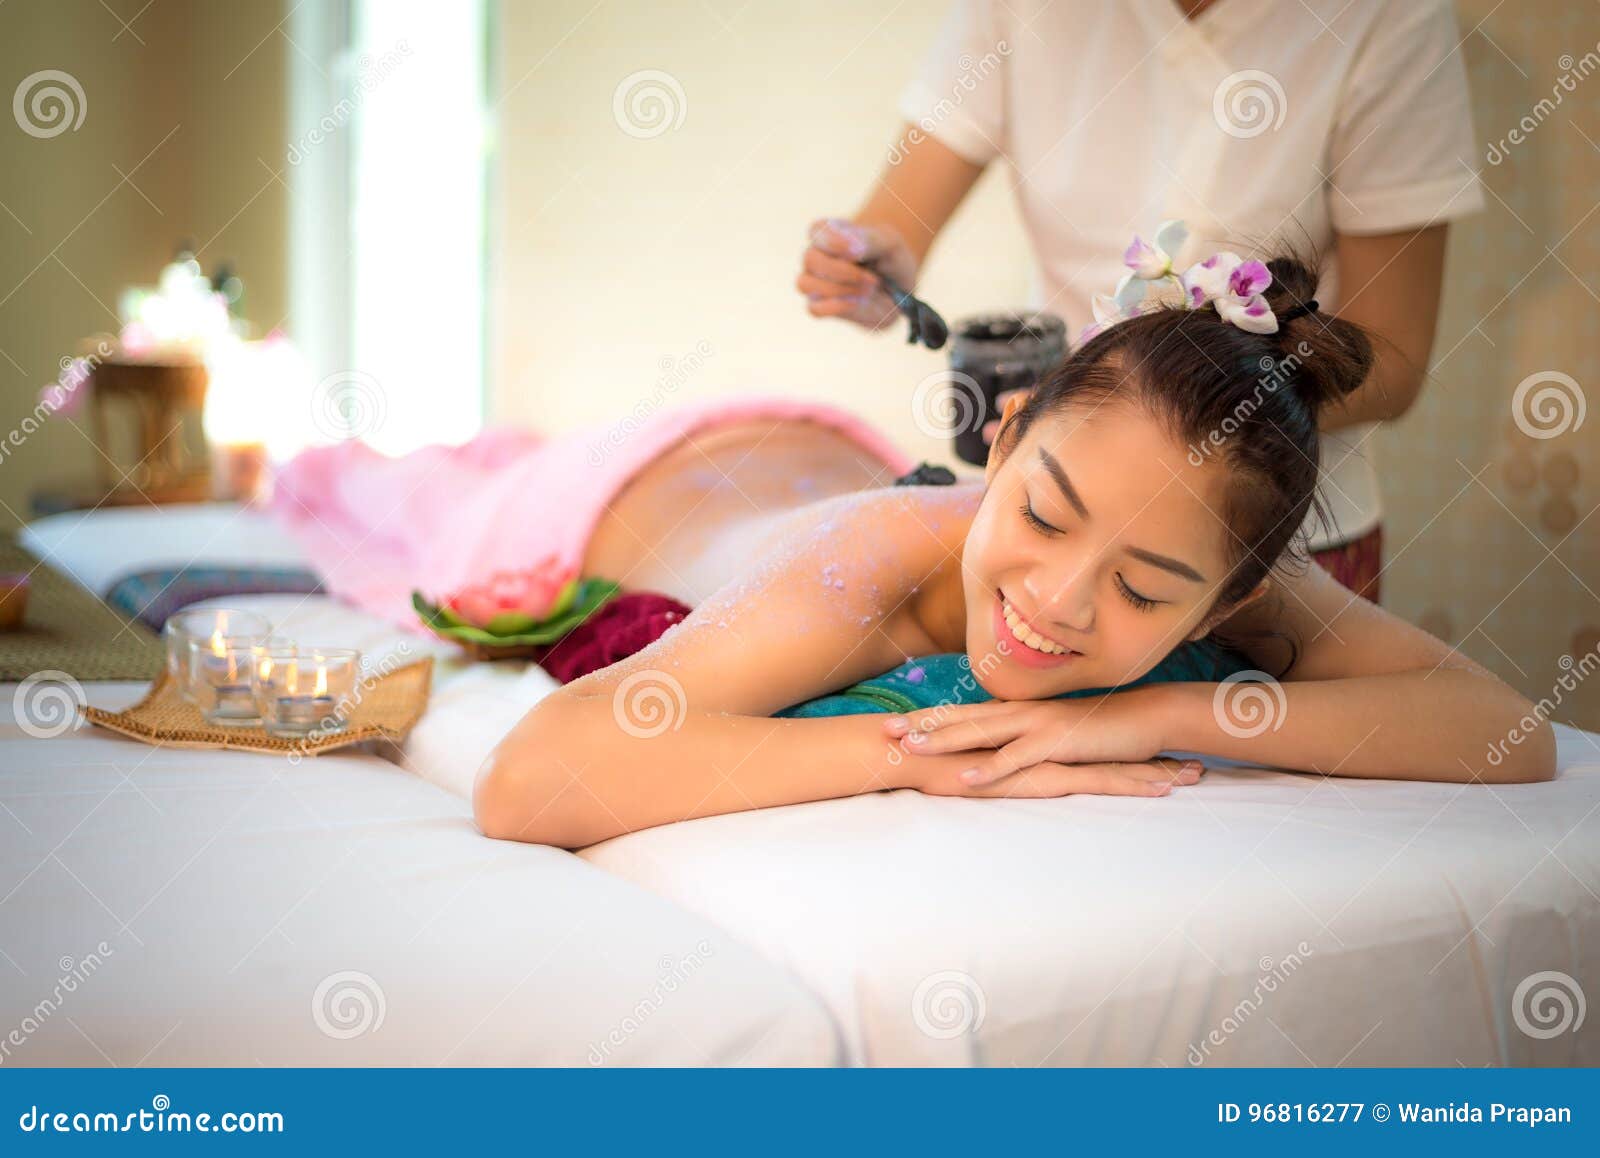 Thai nude slide massage â€“ Free porn movies